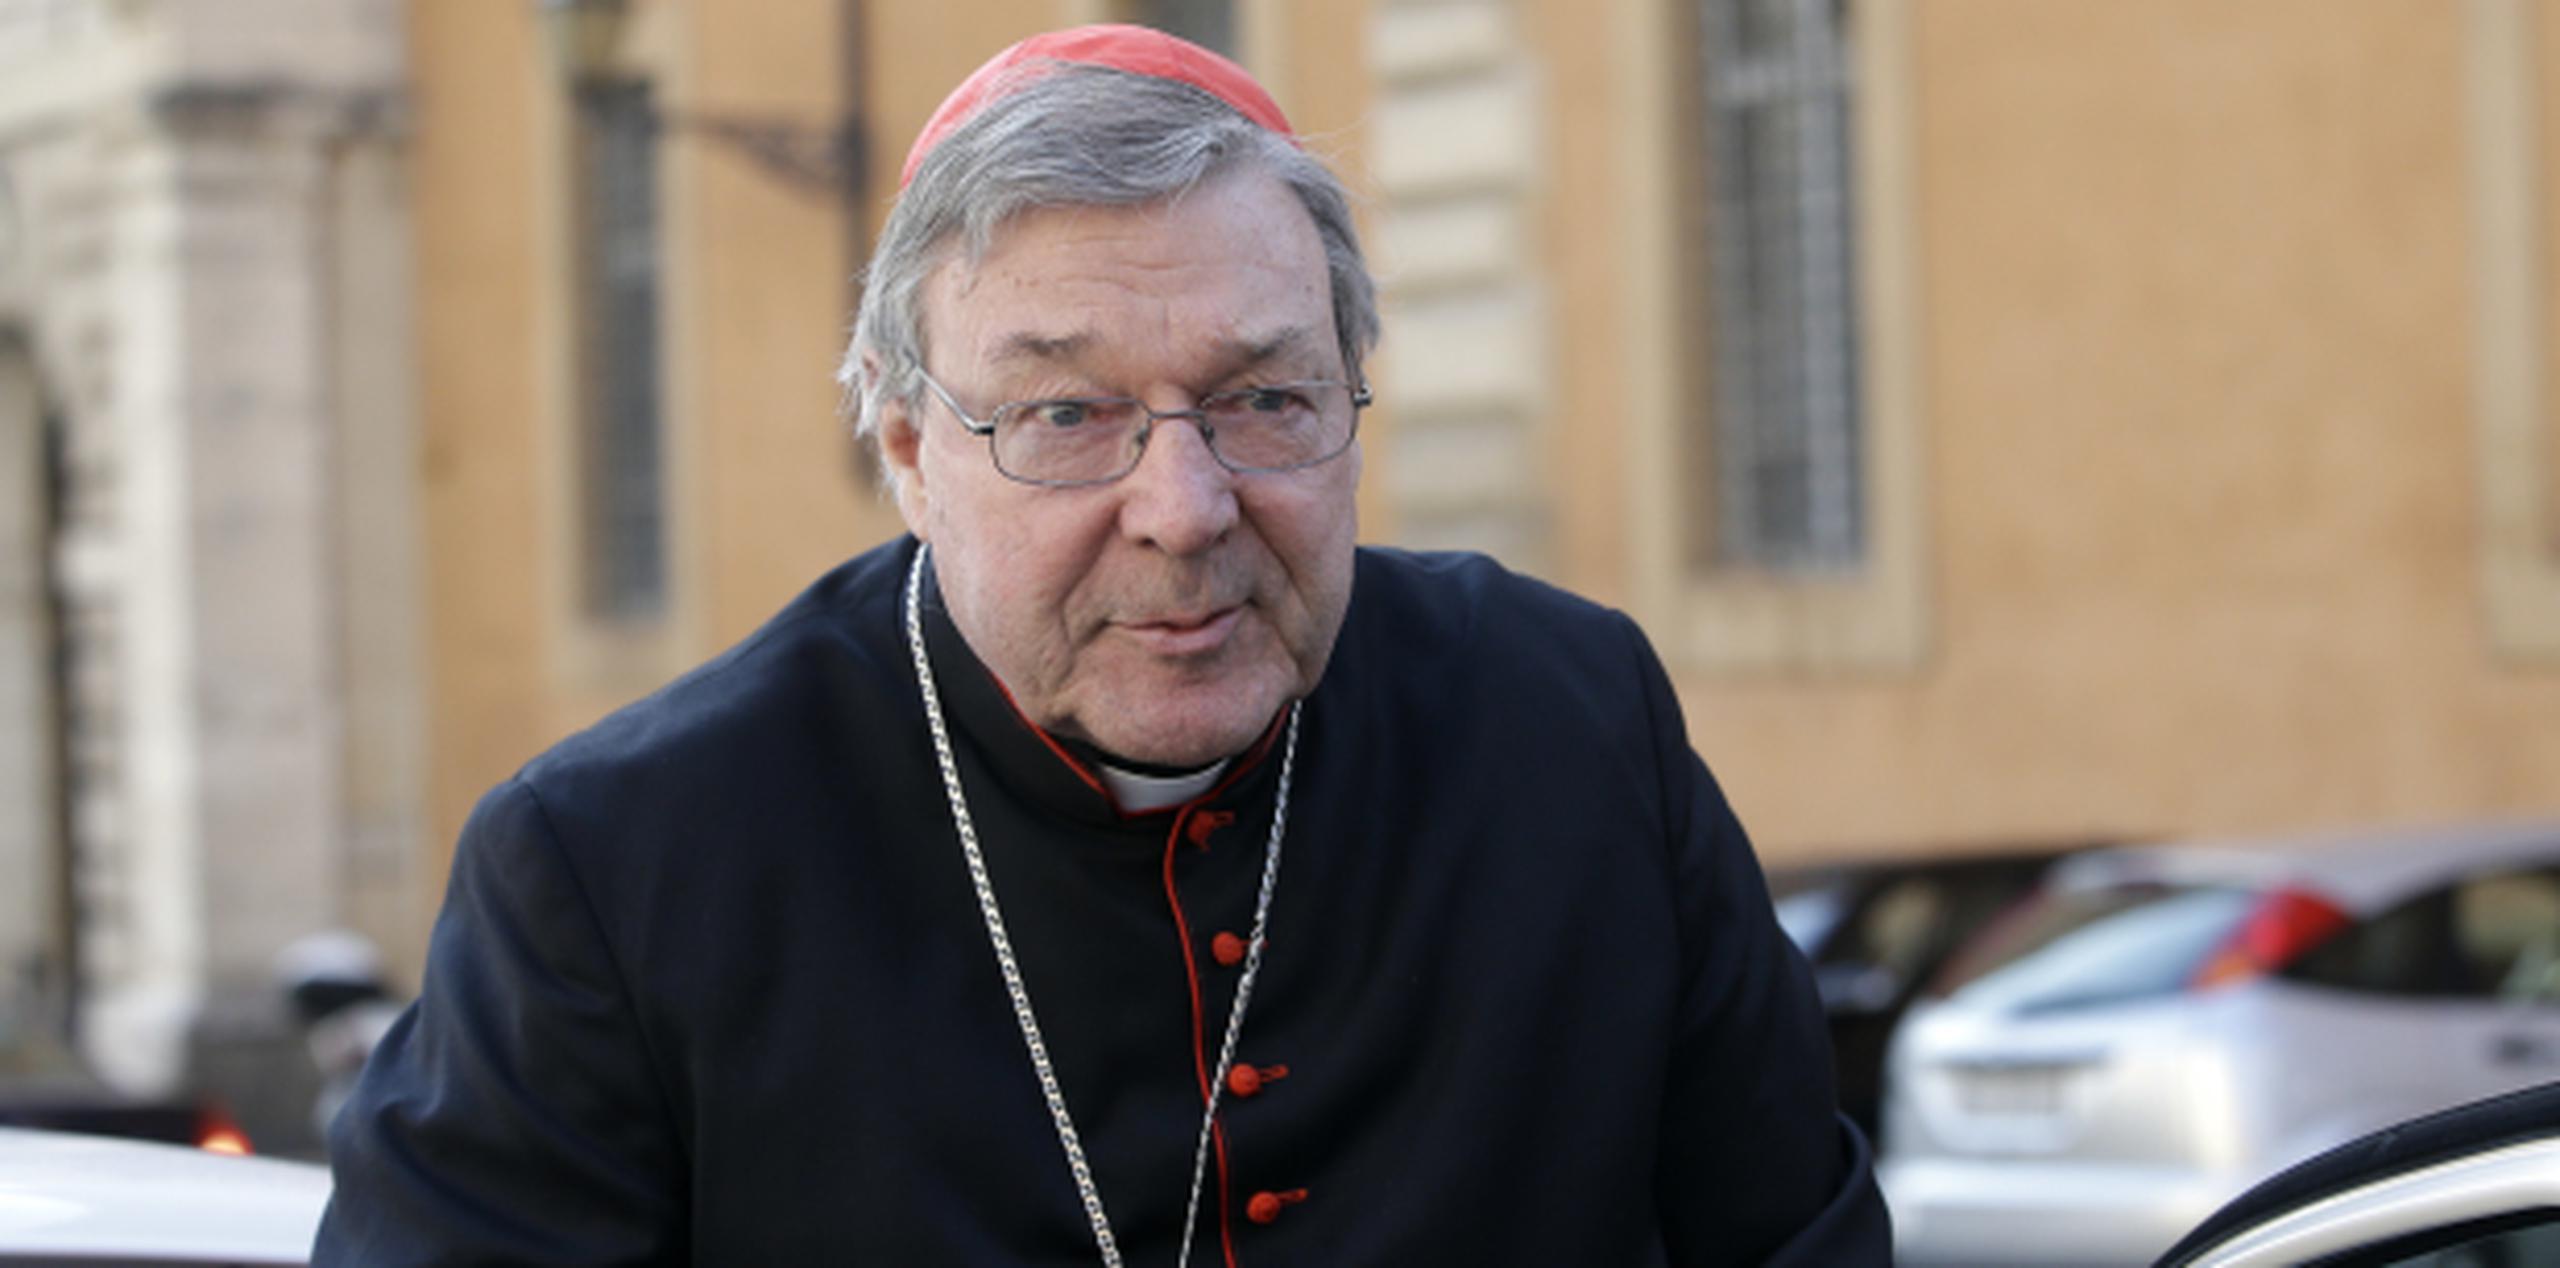 El cardenal Geroge Pell abandonará temporalmente su cargo en el Vaticano y viajará a Australia a confrontar los cargos de supuestos abusos sexuales. (Archivo)